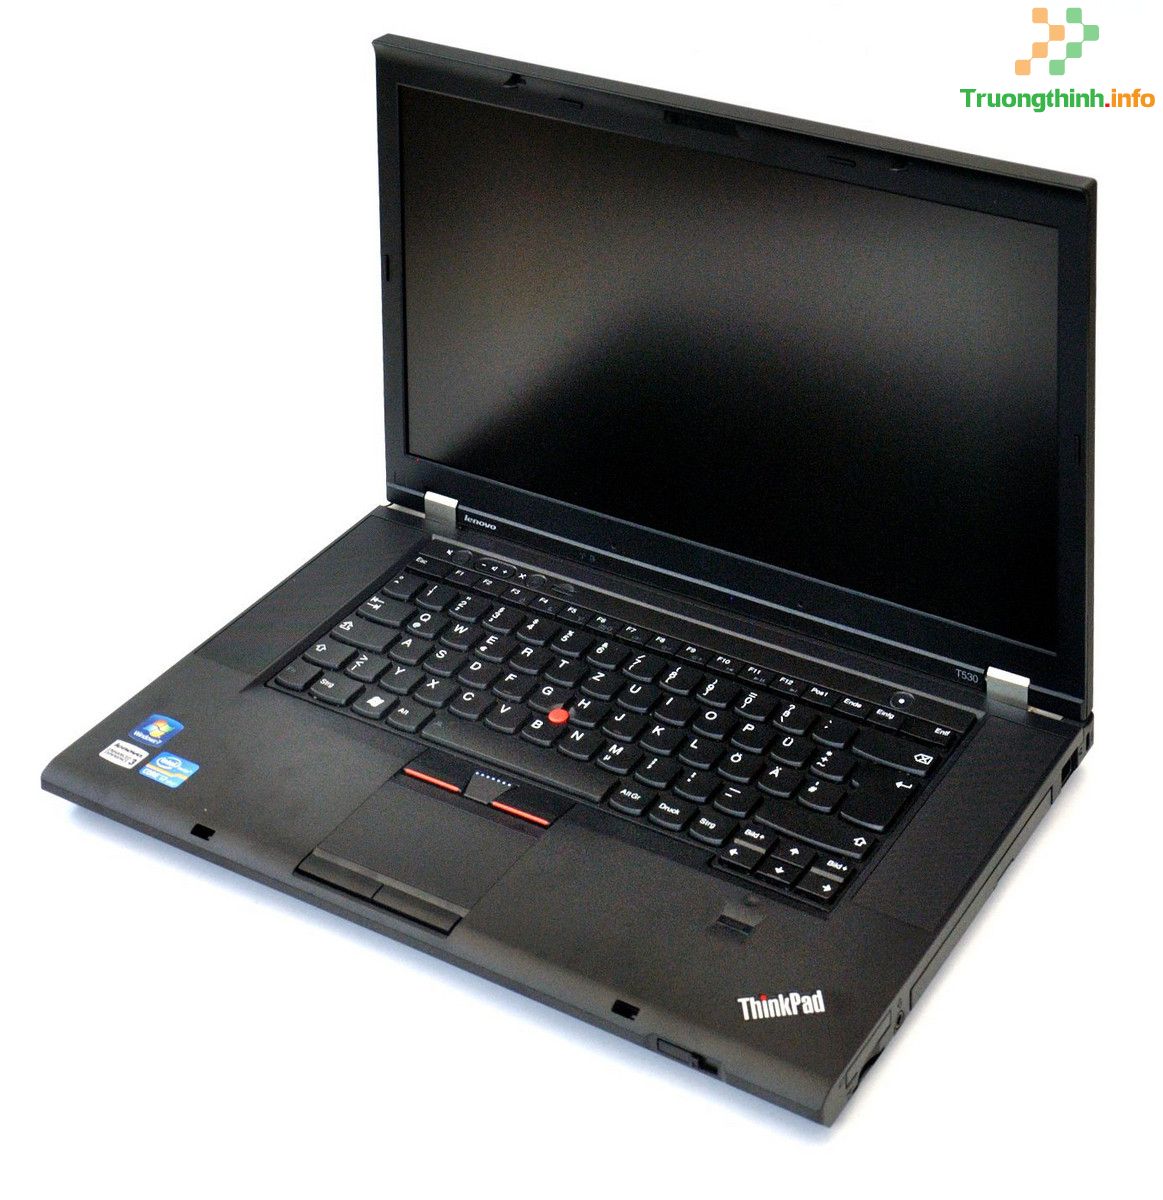 Thay sửa màn hình laptop Lenovo Thinkpad T530 Giá rẻ - Uy Tín